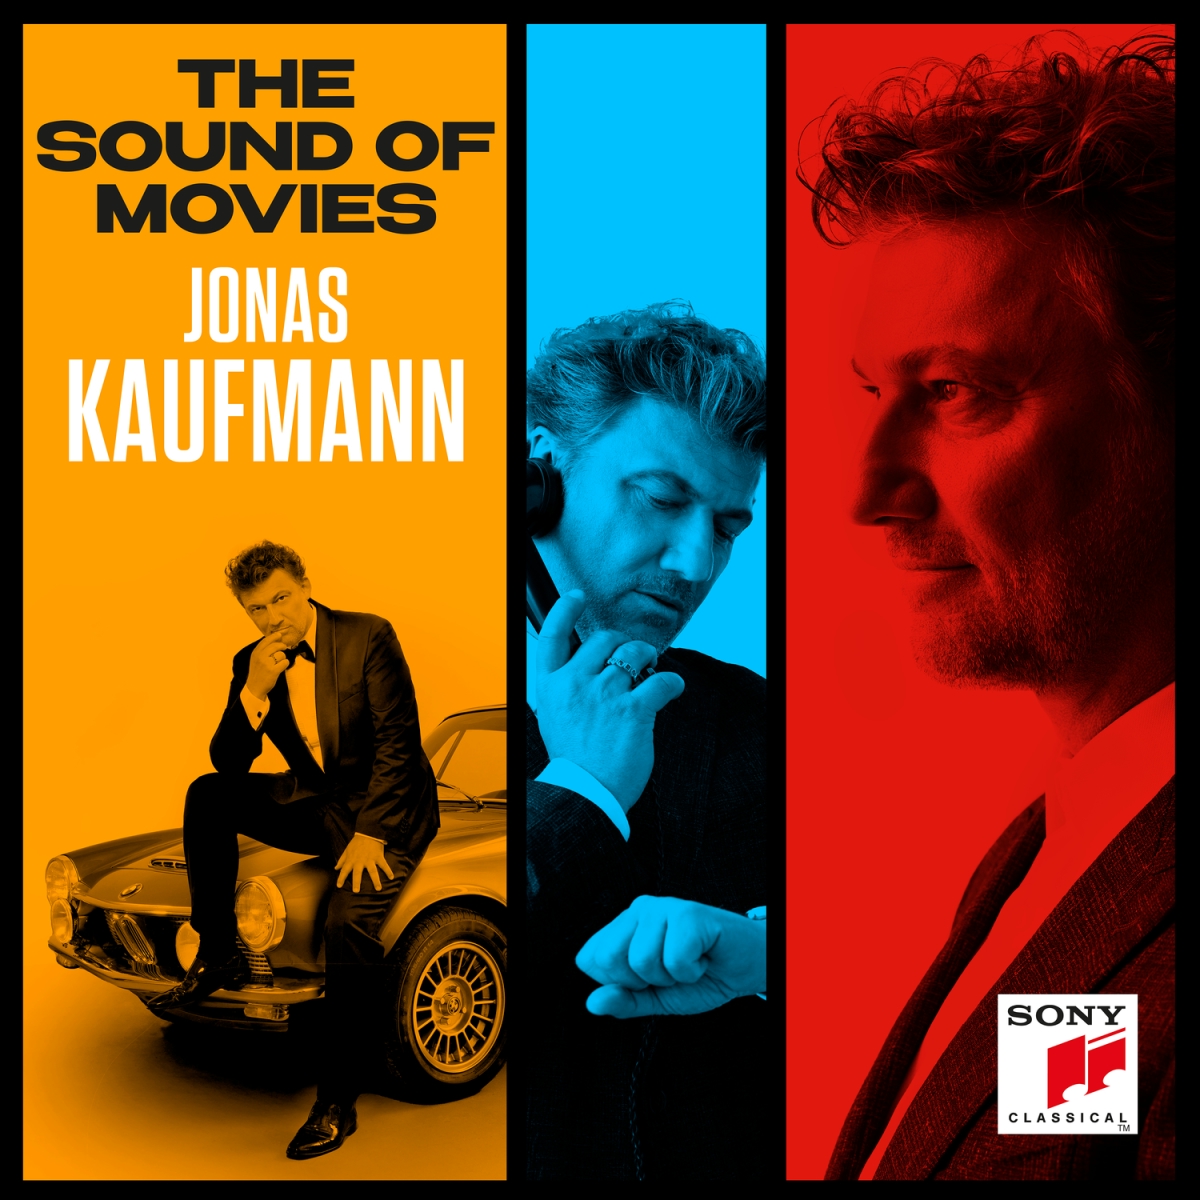 Jonas Kaufmann - The Sound of Movies